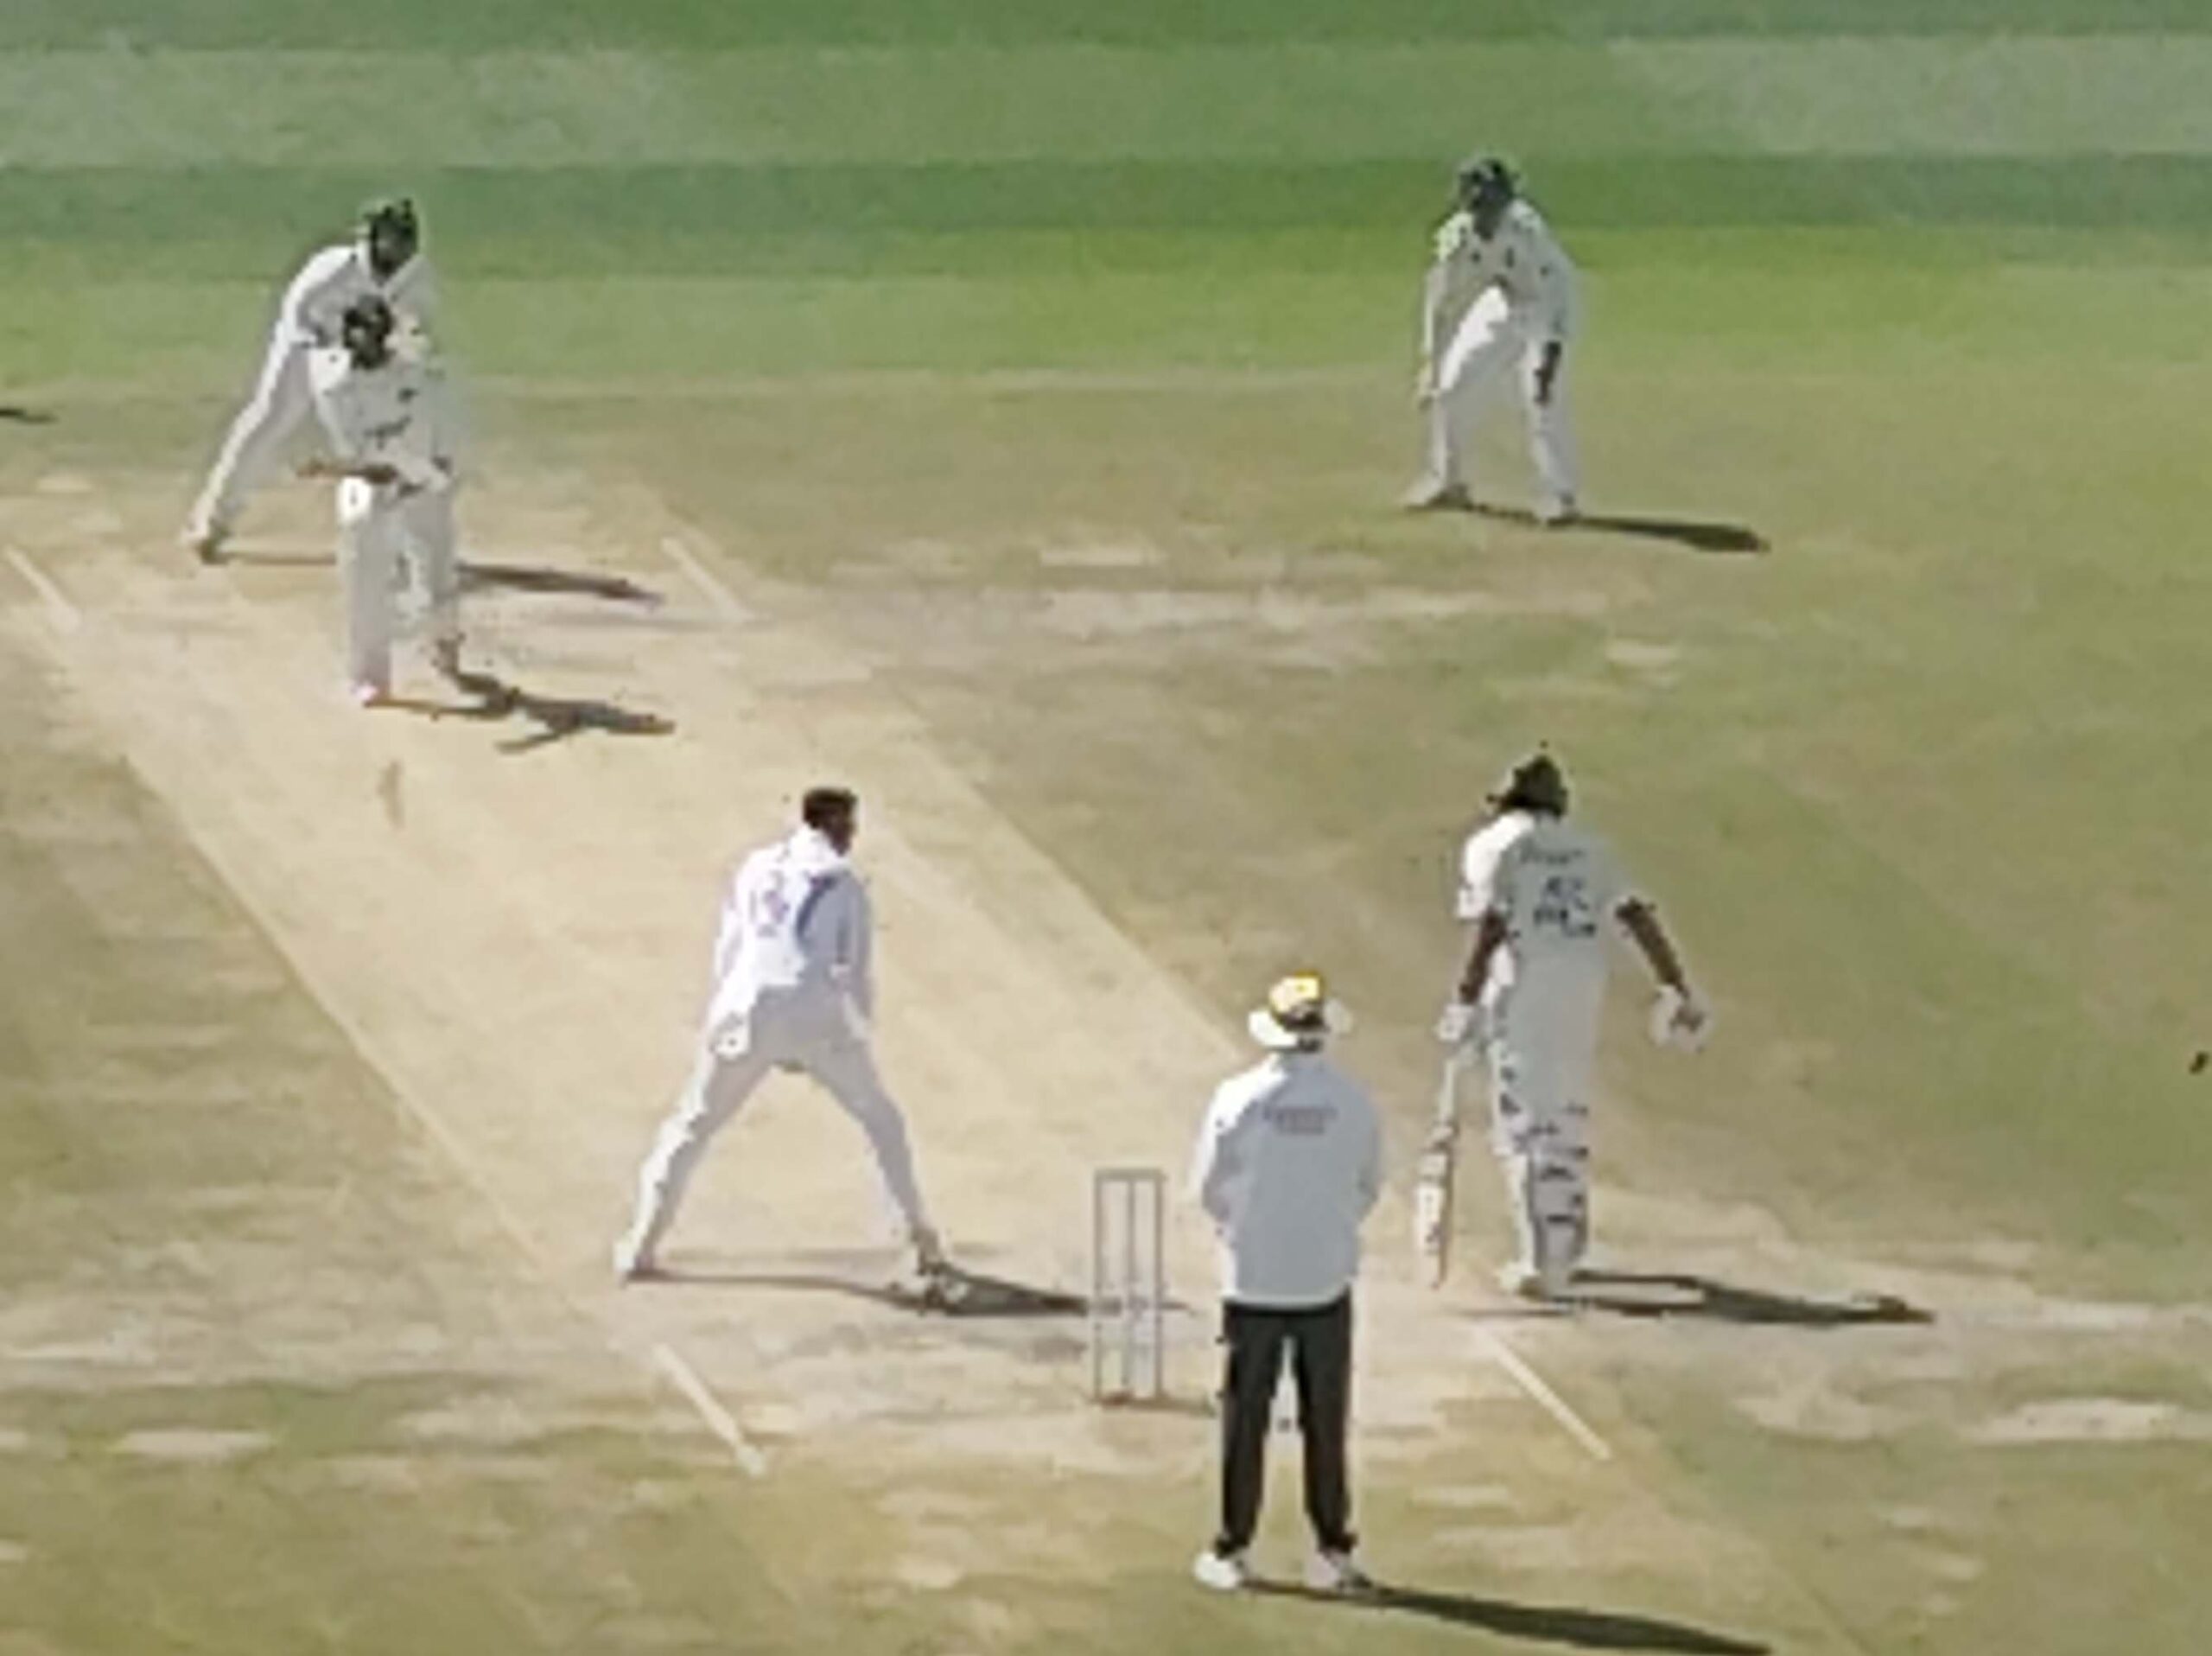 test career: इंगलैंड के जेम्स एंडरसन ने बनाया रिकाॅर्ड, 700 विकेट लेने वाले पहले तेज गेंदबाज बने